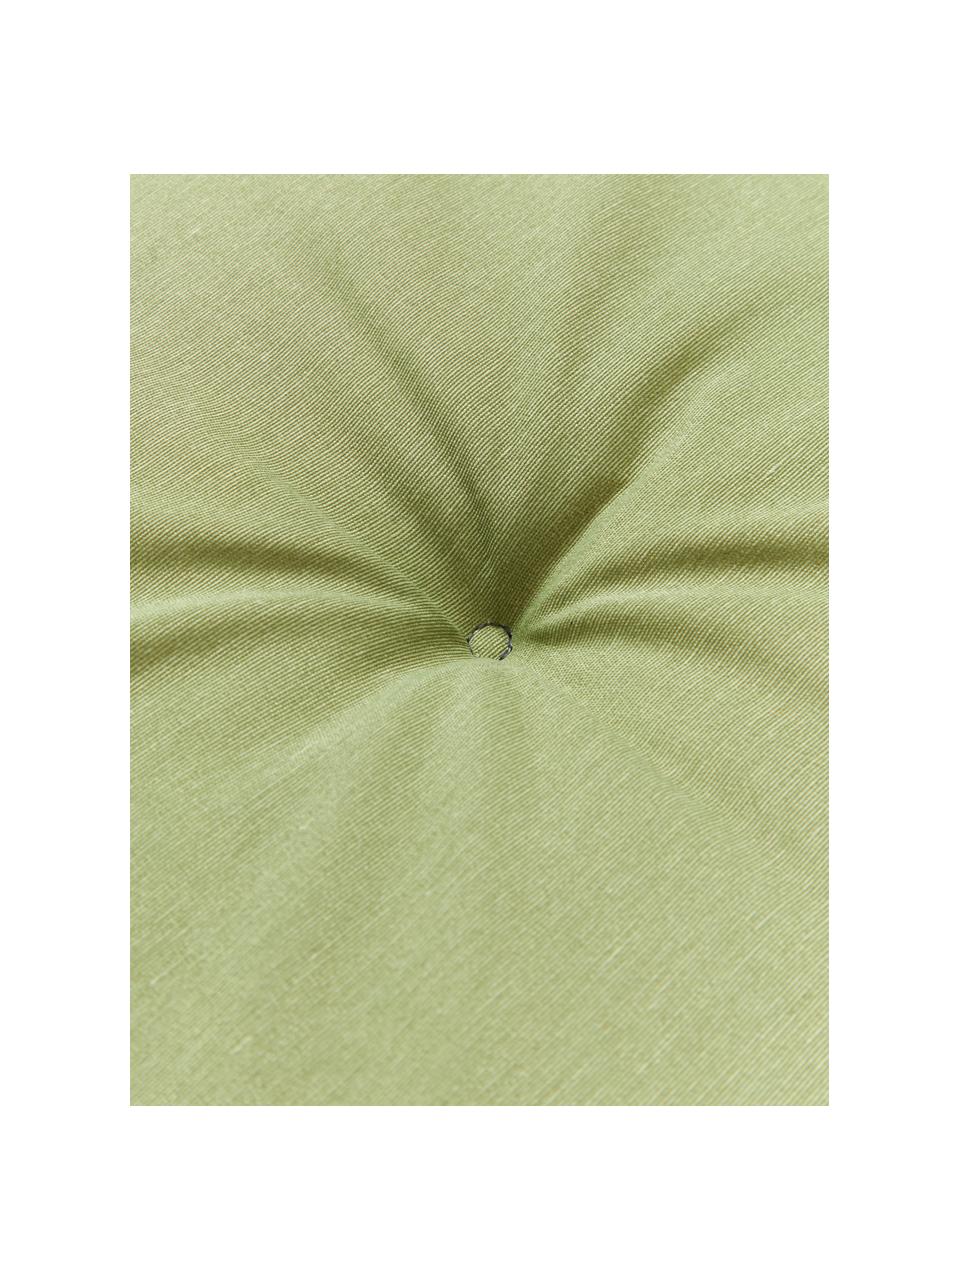 Poduszka na ławkę Panama, 2 szt., Tapicerka: 50% bawełna, 45% polieste, Jasny zielony, S 48 x D 120 cm